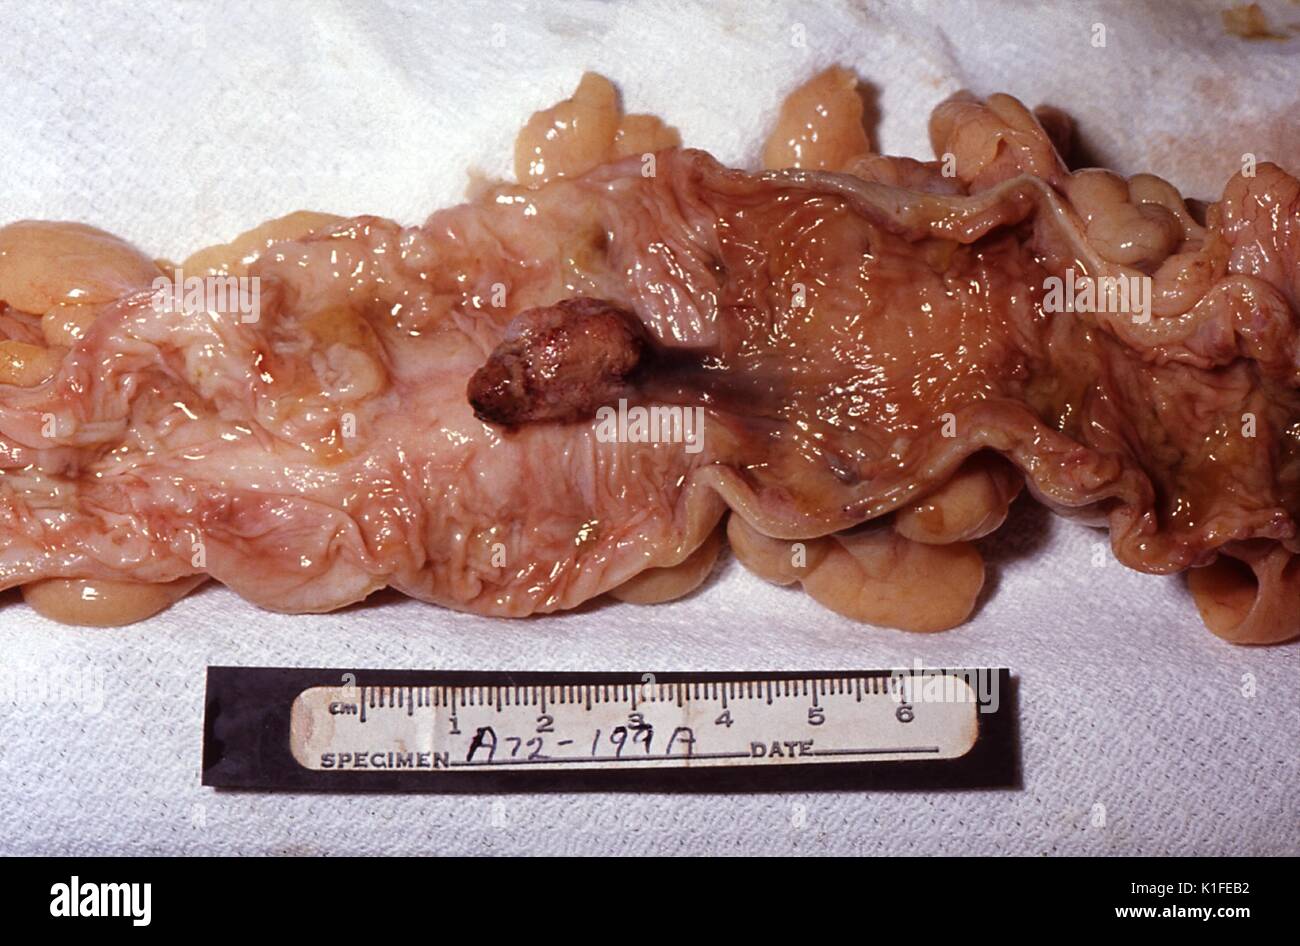 Patologia grossolana di polipo, colon, incidentali autopsia di constatazione di un polipo peduncolato durante un lordo esame patologico di un campione del colon. Immagine cortesia CDC/Dott. Edwin P. Ewing, Jr, 1972. Foto Stock